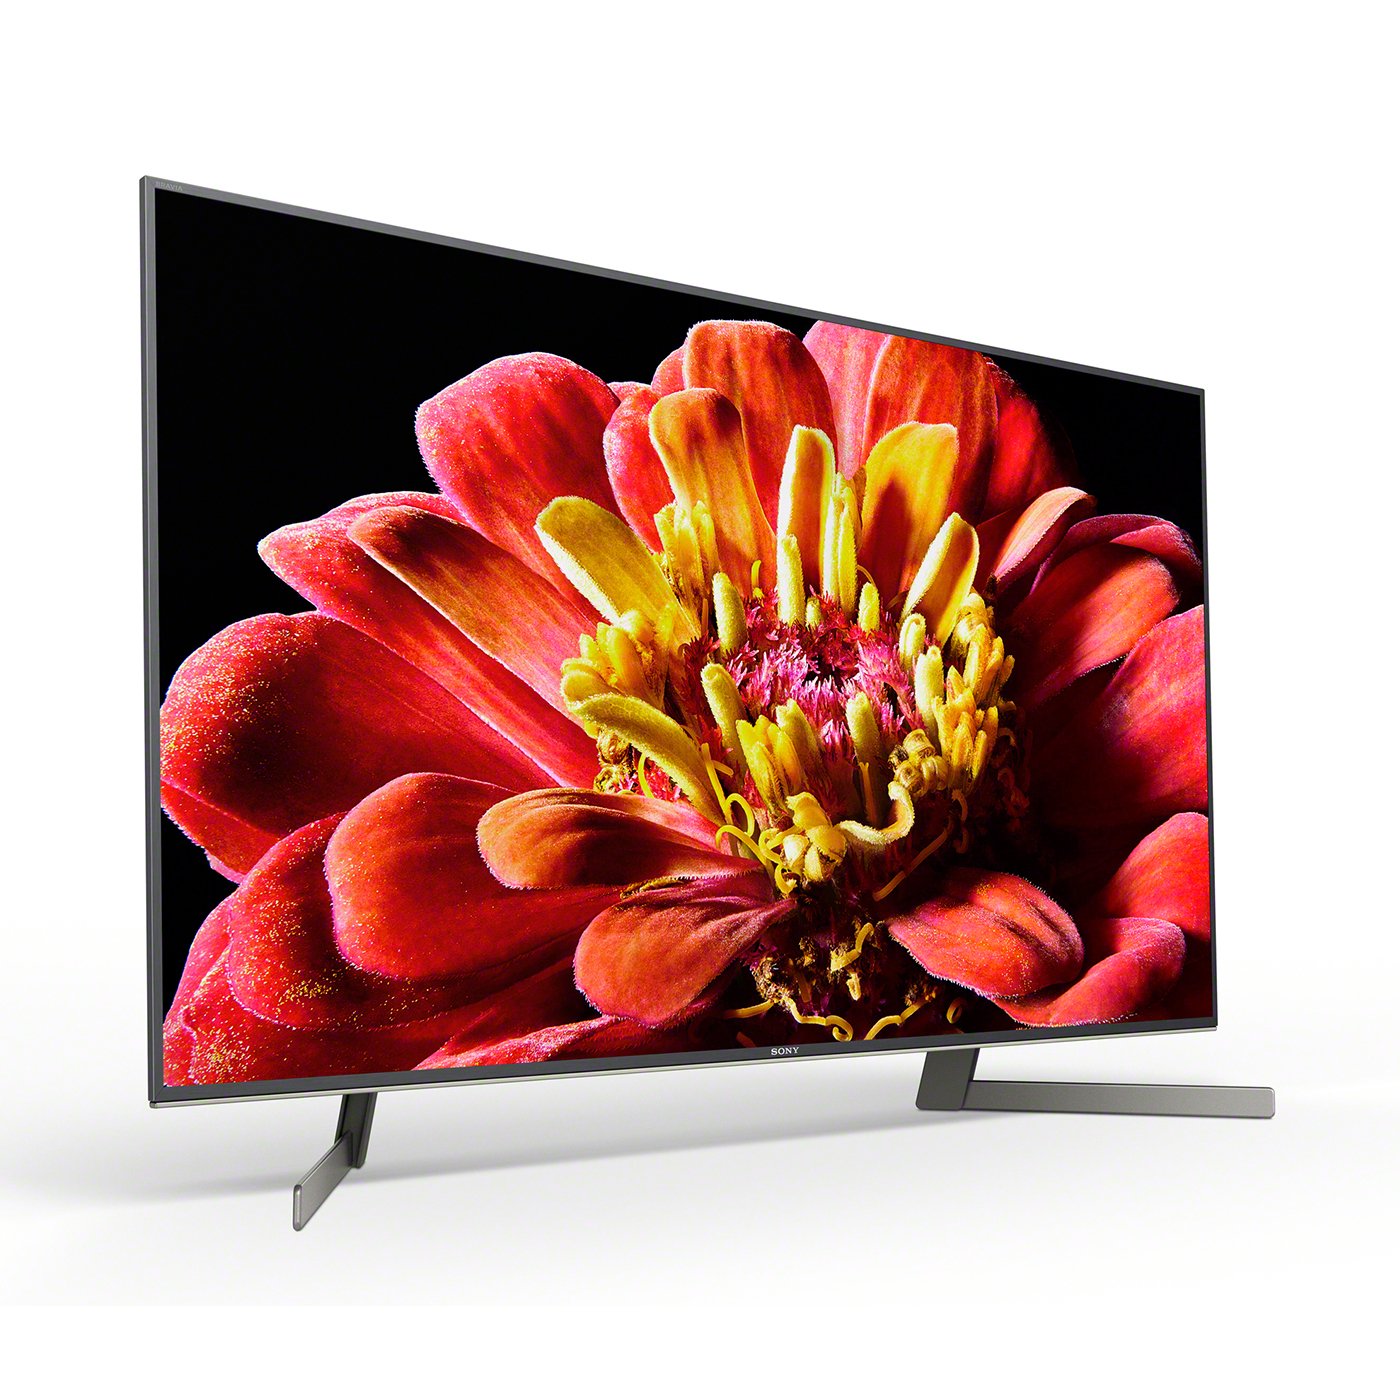 Sony 49 Inch KD49XG9005BU Smart 4K Ultra HD LED TV Review